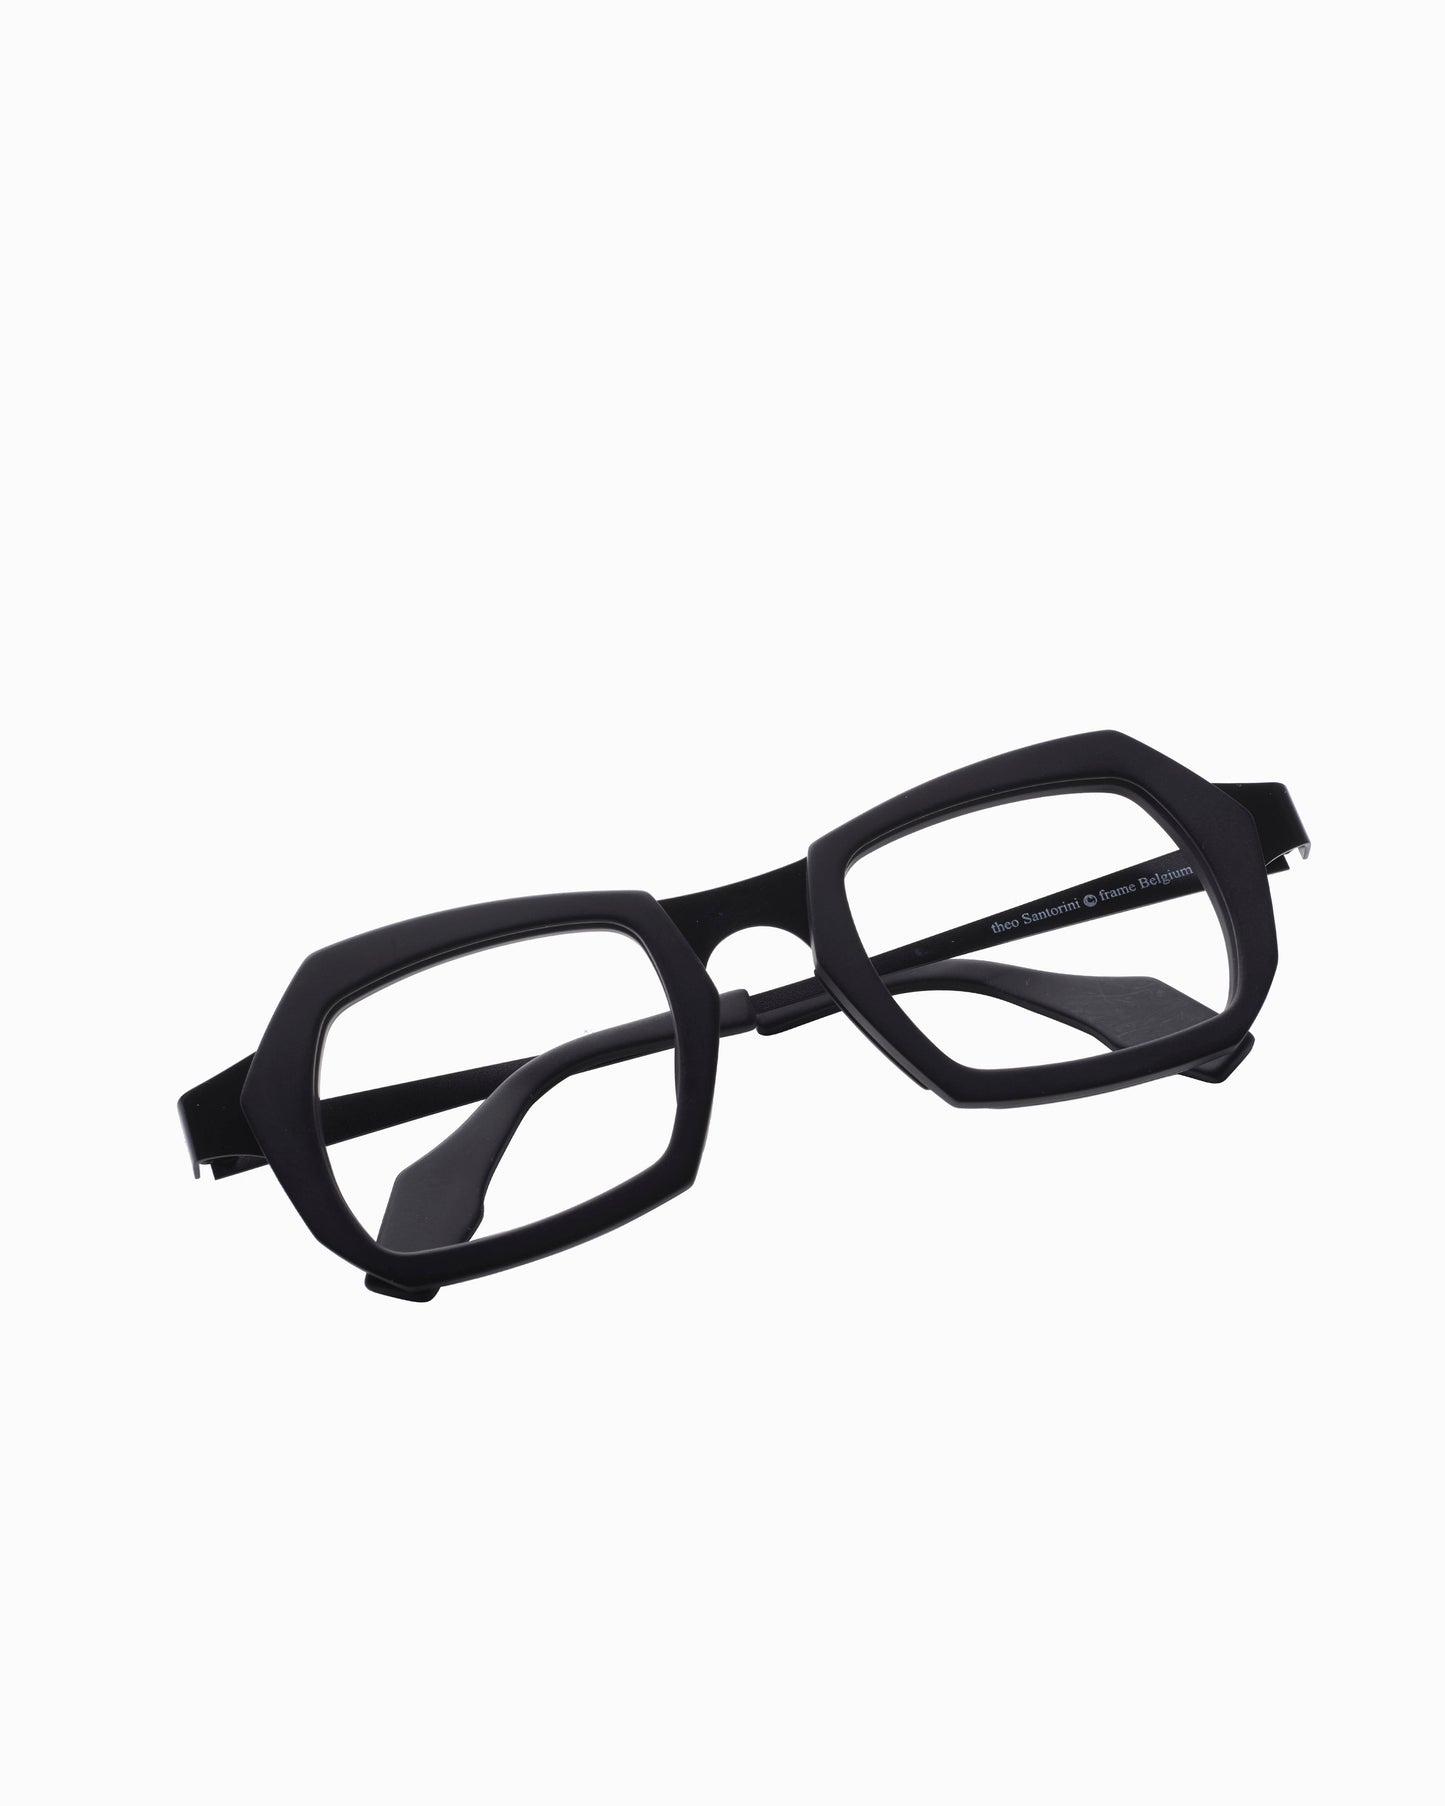 Theo - Santorini - 1 | Bar à lunettes